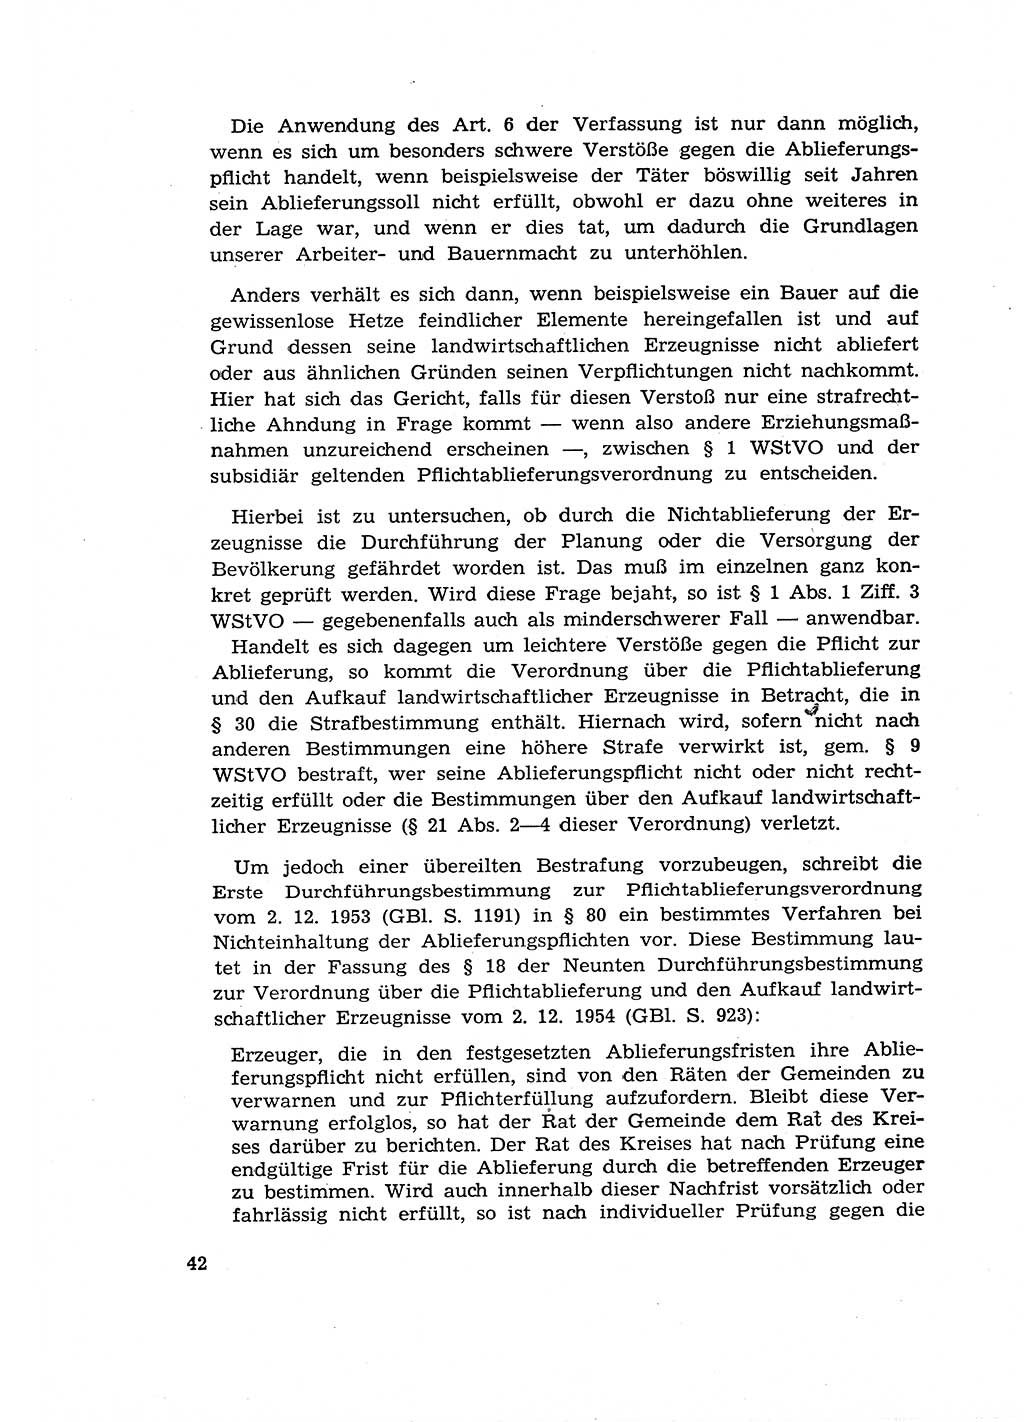 Materialien zum Strafrecht, Besonderer Teil [Deutsche Demokratische Republik (DDR)] 1955, Seite 42 (Mat. Strafr. BT DDR 1955, S. 42)